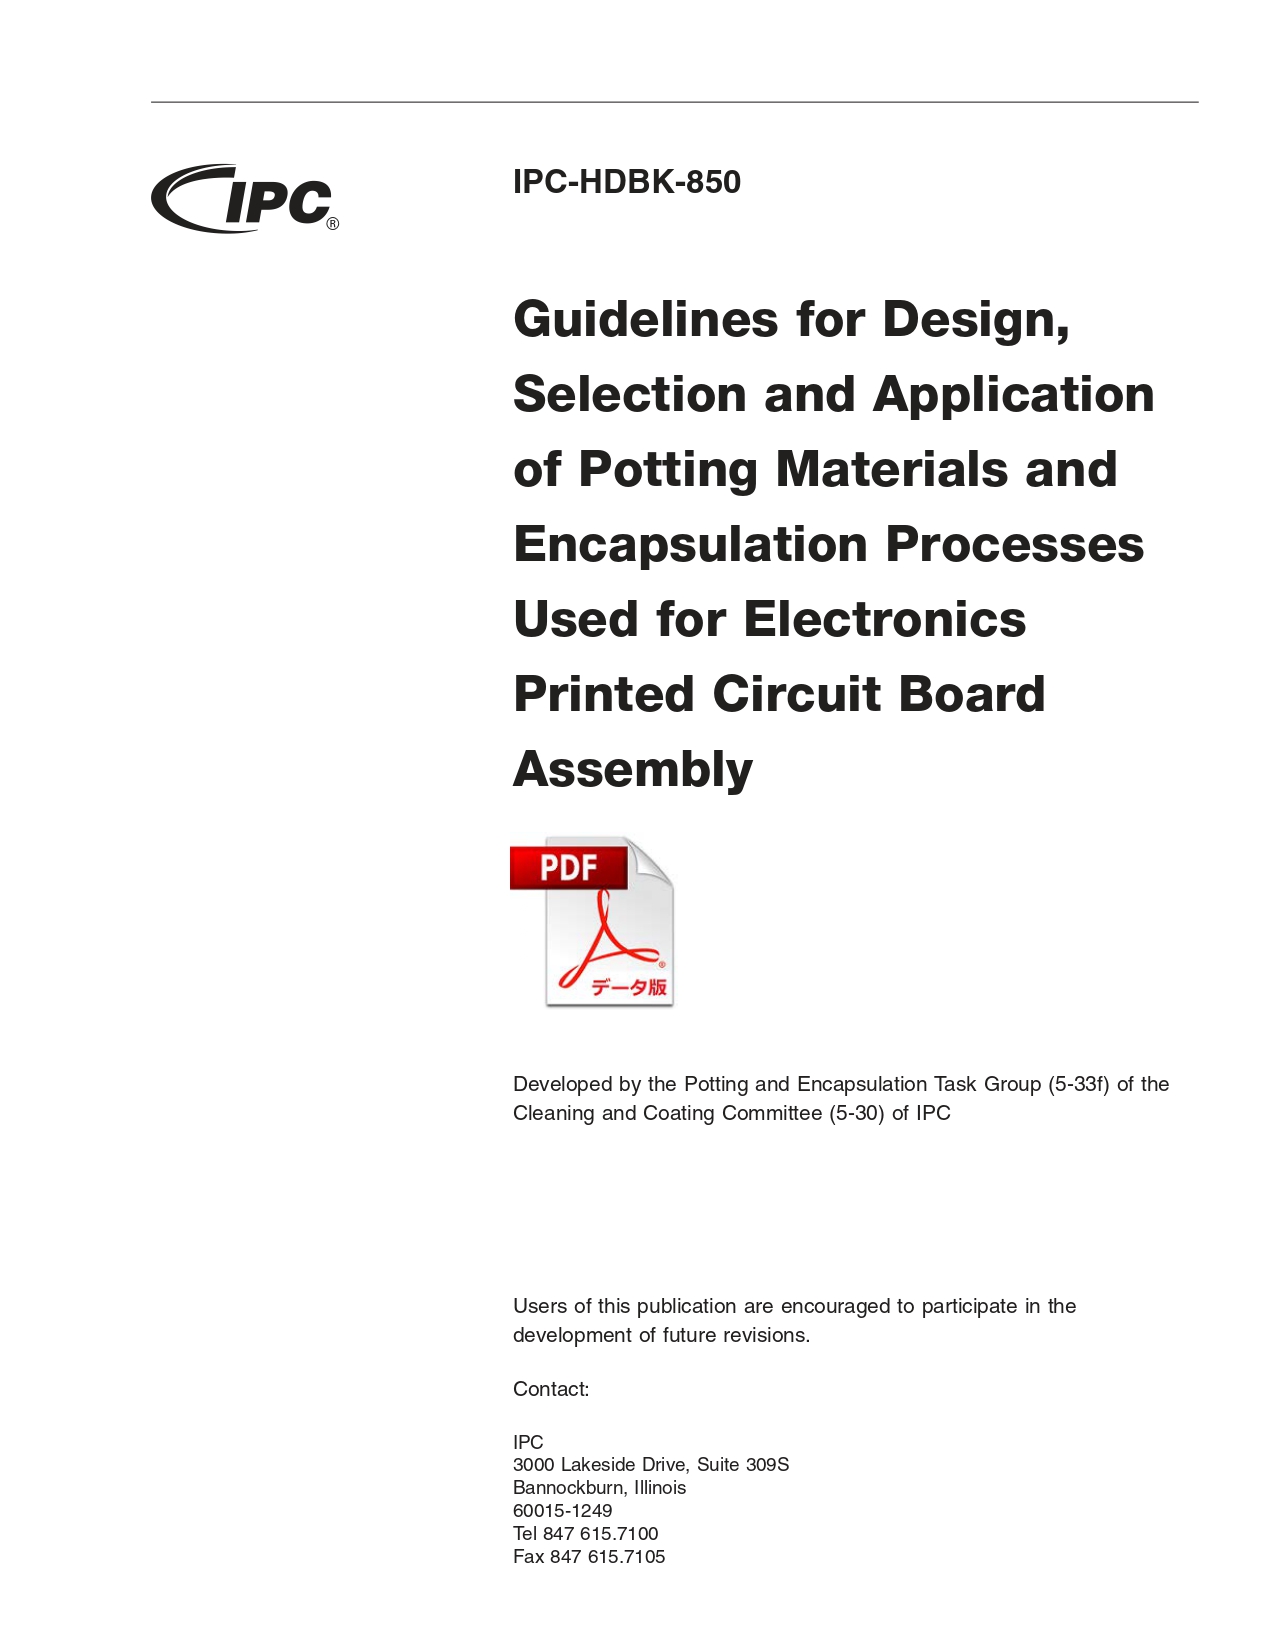 ［英語版］IPC-HDBK-850: Guidelines for Design, Selection and Application of Potting Materials and Encapsulation Processes Used for Electronics Printed Circuit Board Assembly